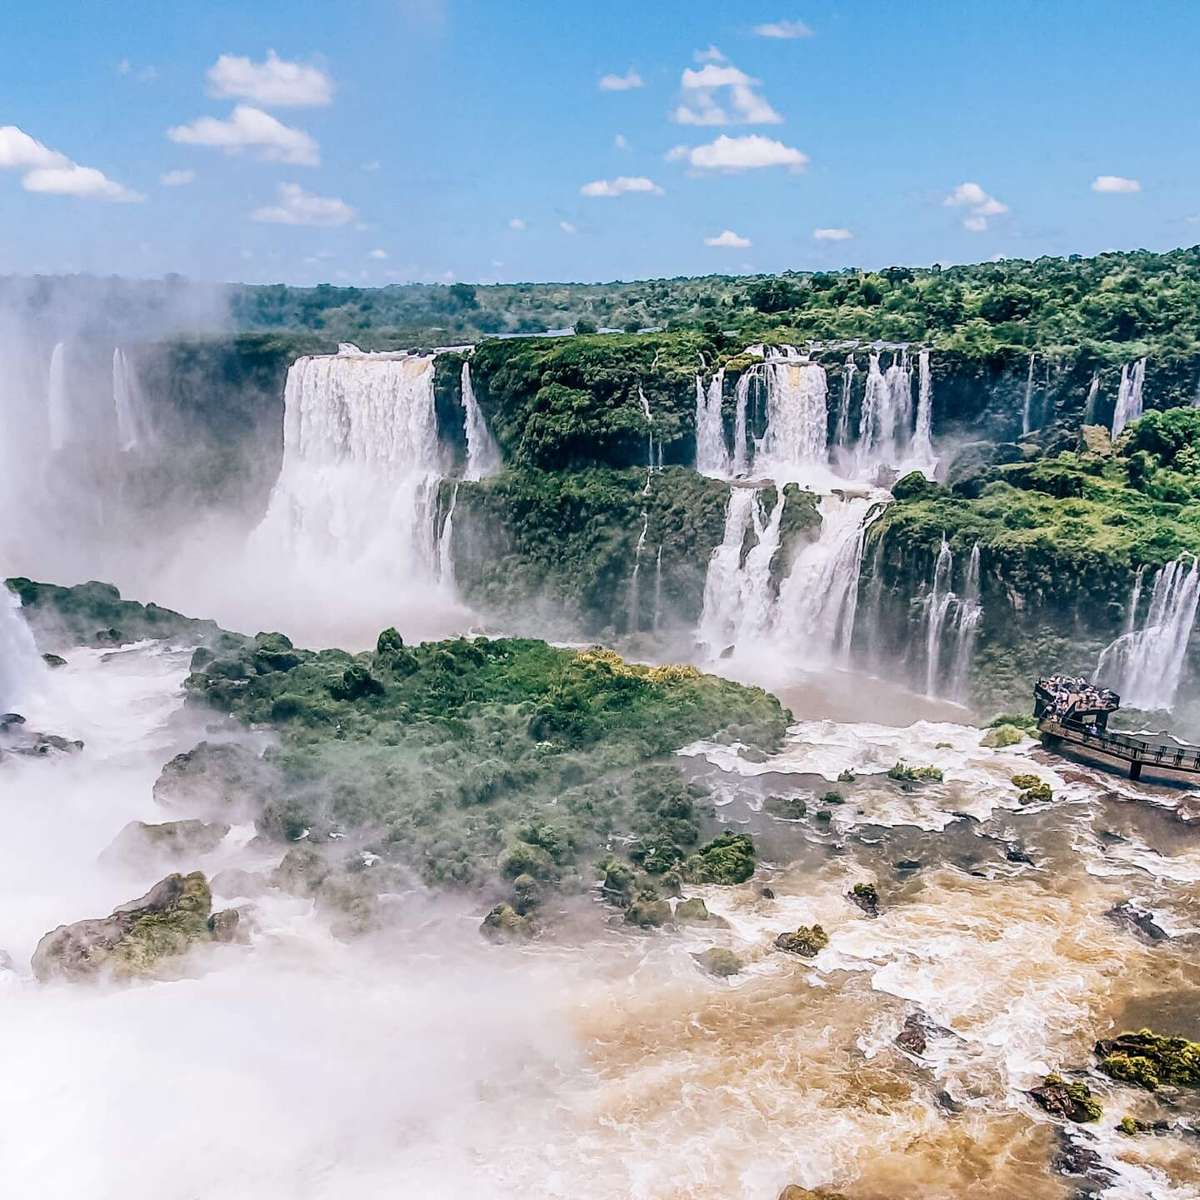 Iguazufallen glidande pussel online